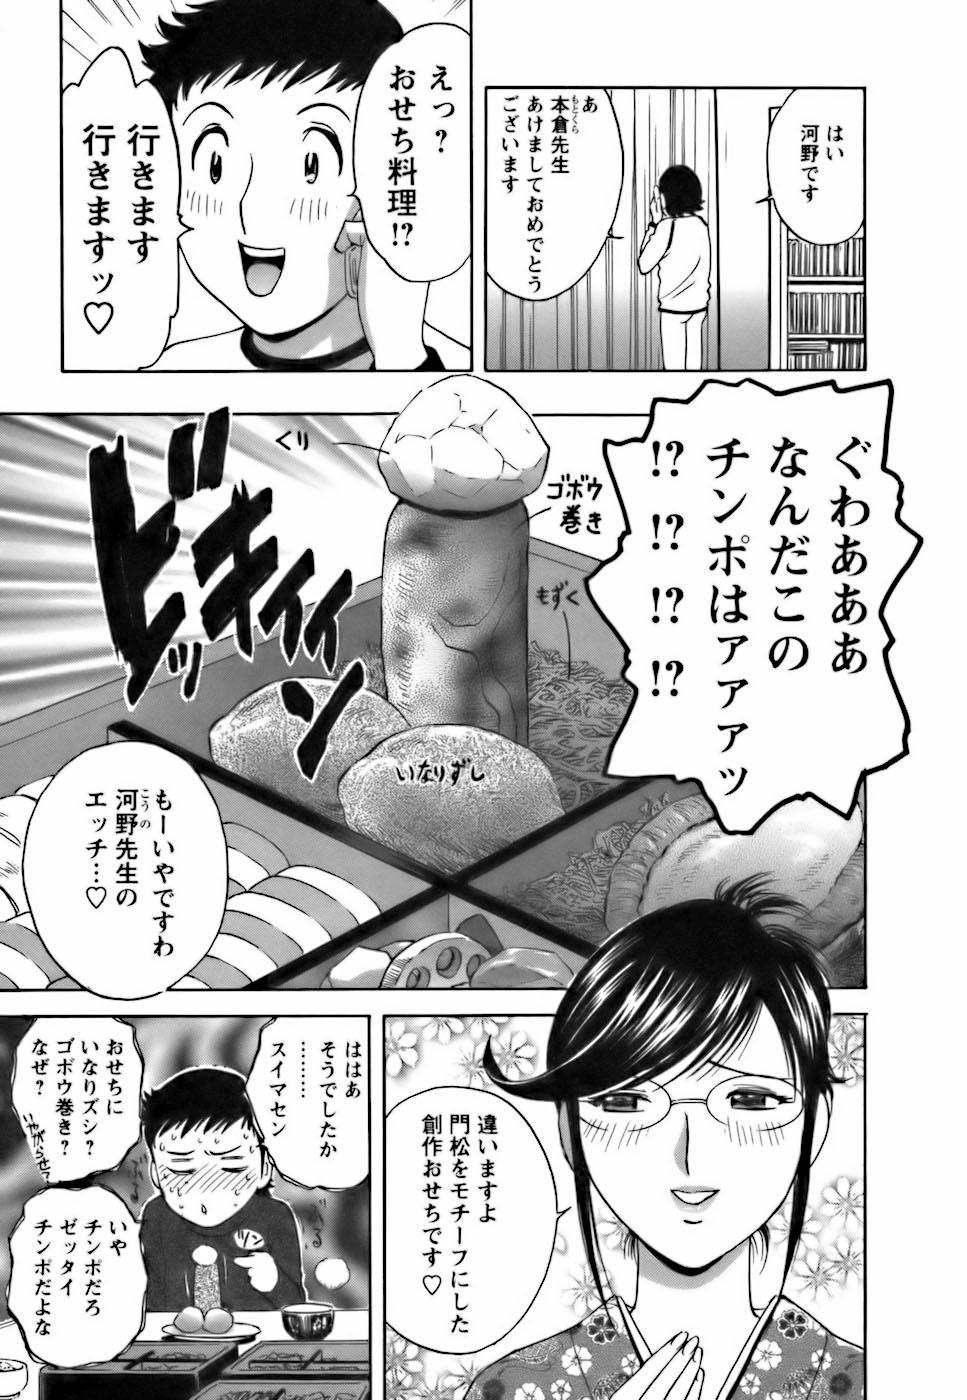 [Hidemaru] Mo-Retsu! Boin Sensei (Boing Boing Teacher) Vol.3 152